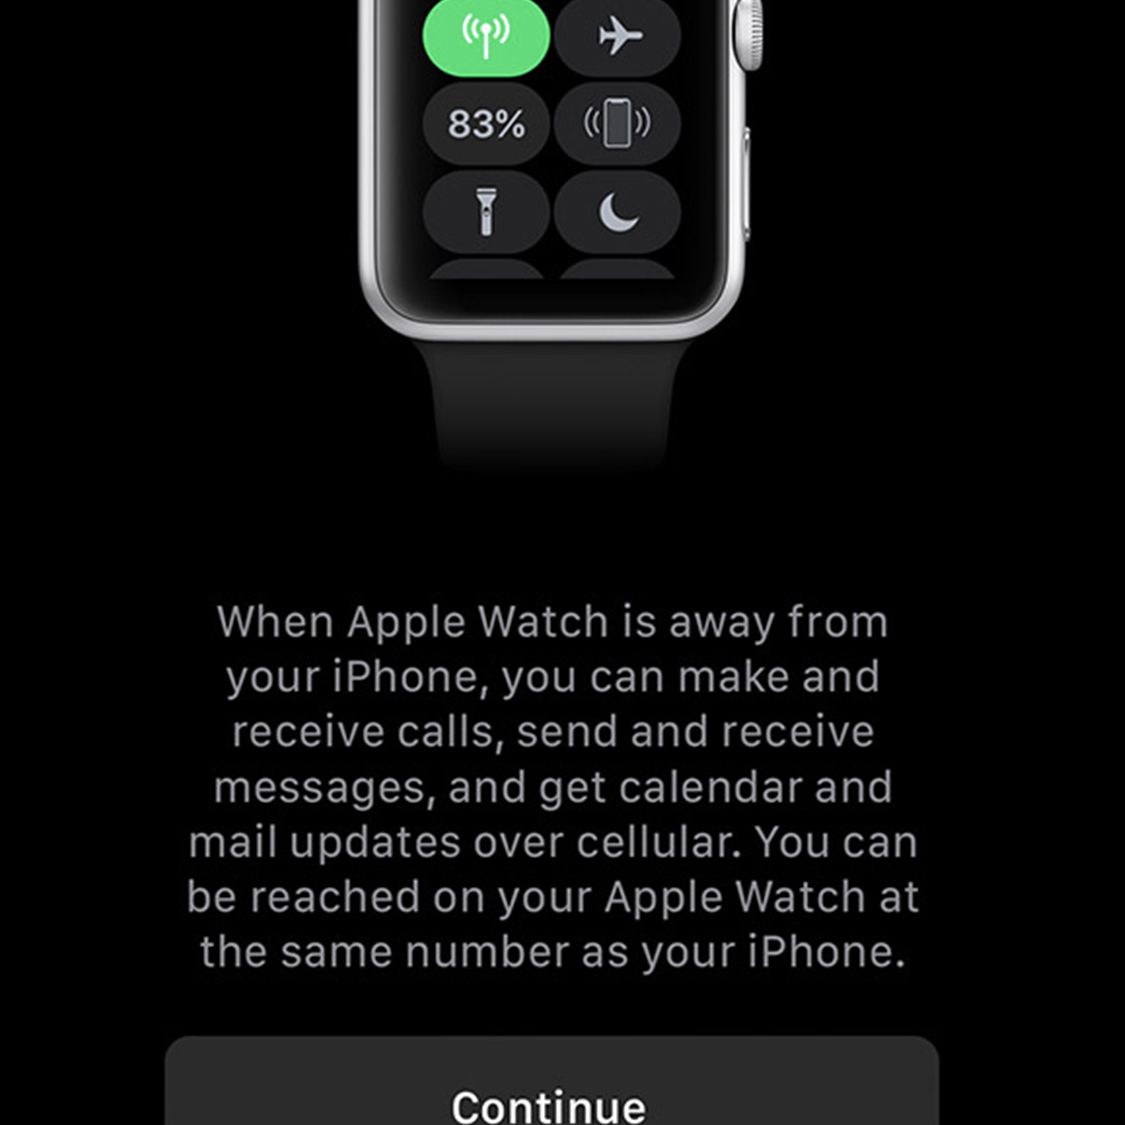 Er is een scherm ingesteld met de mobiele service voor de Apple Watch